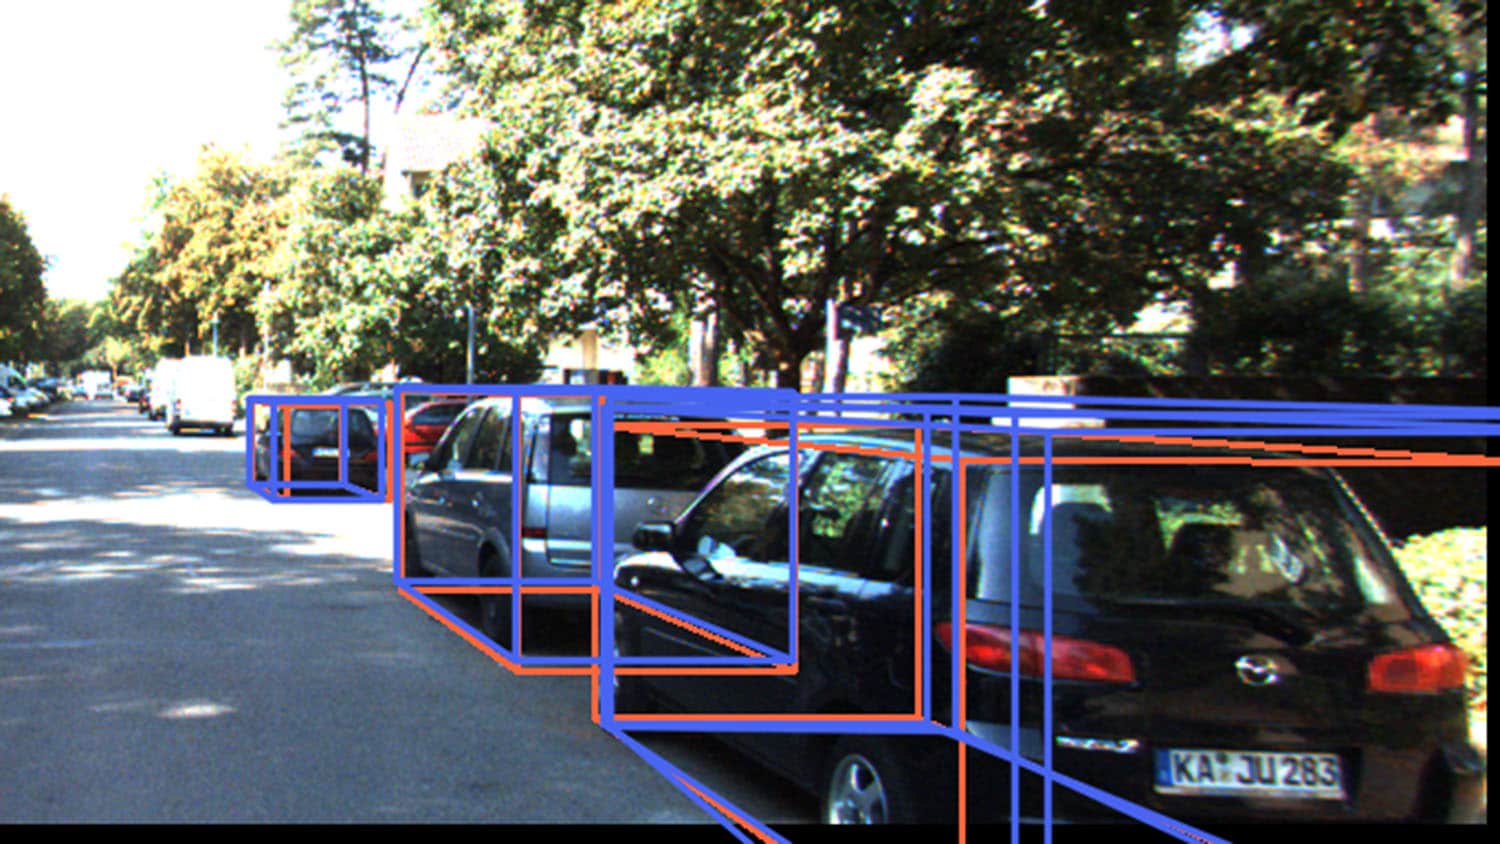 图片显示了街道上的汽车，每辆车都被线包围，表示一个边界框